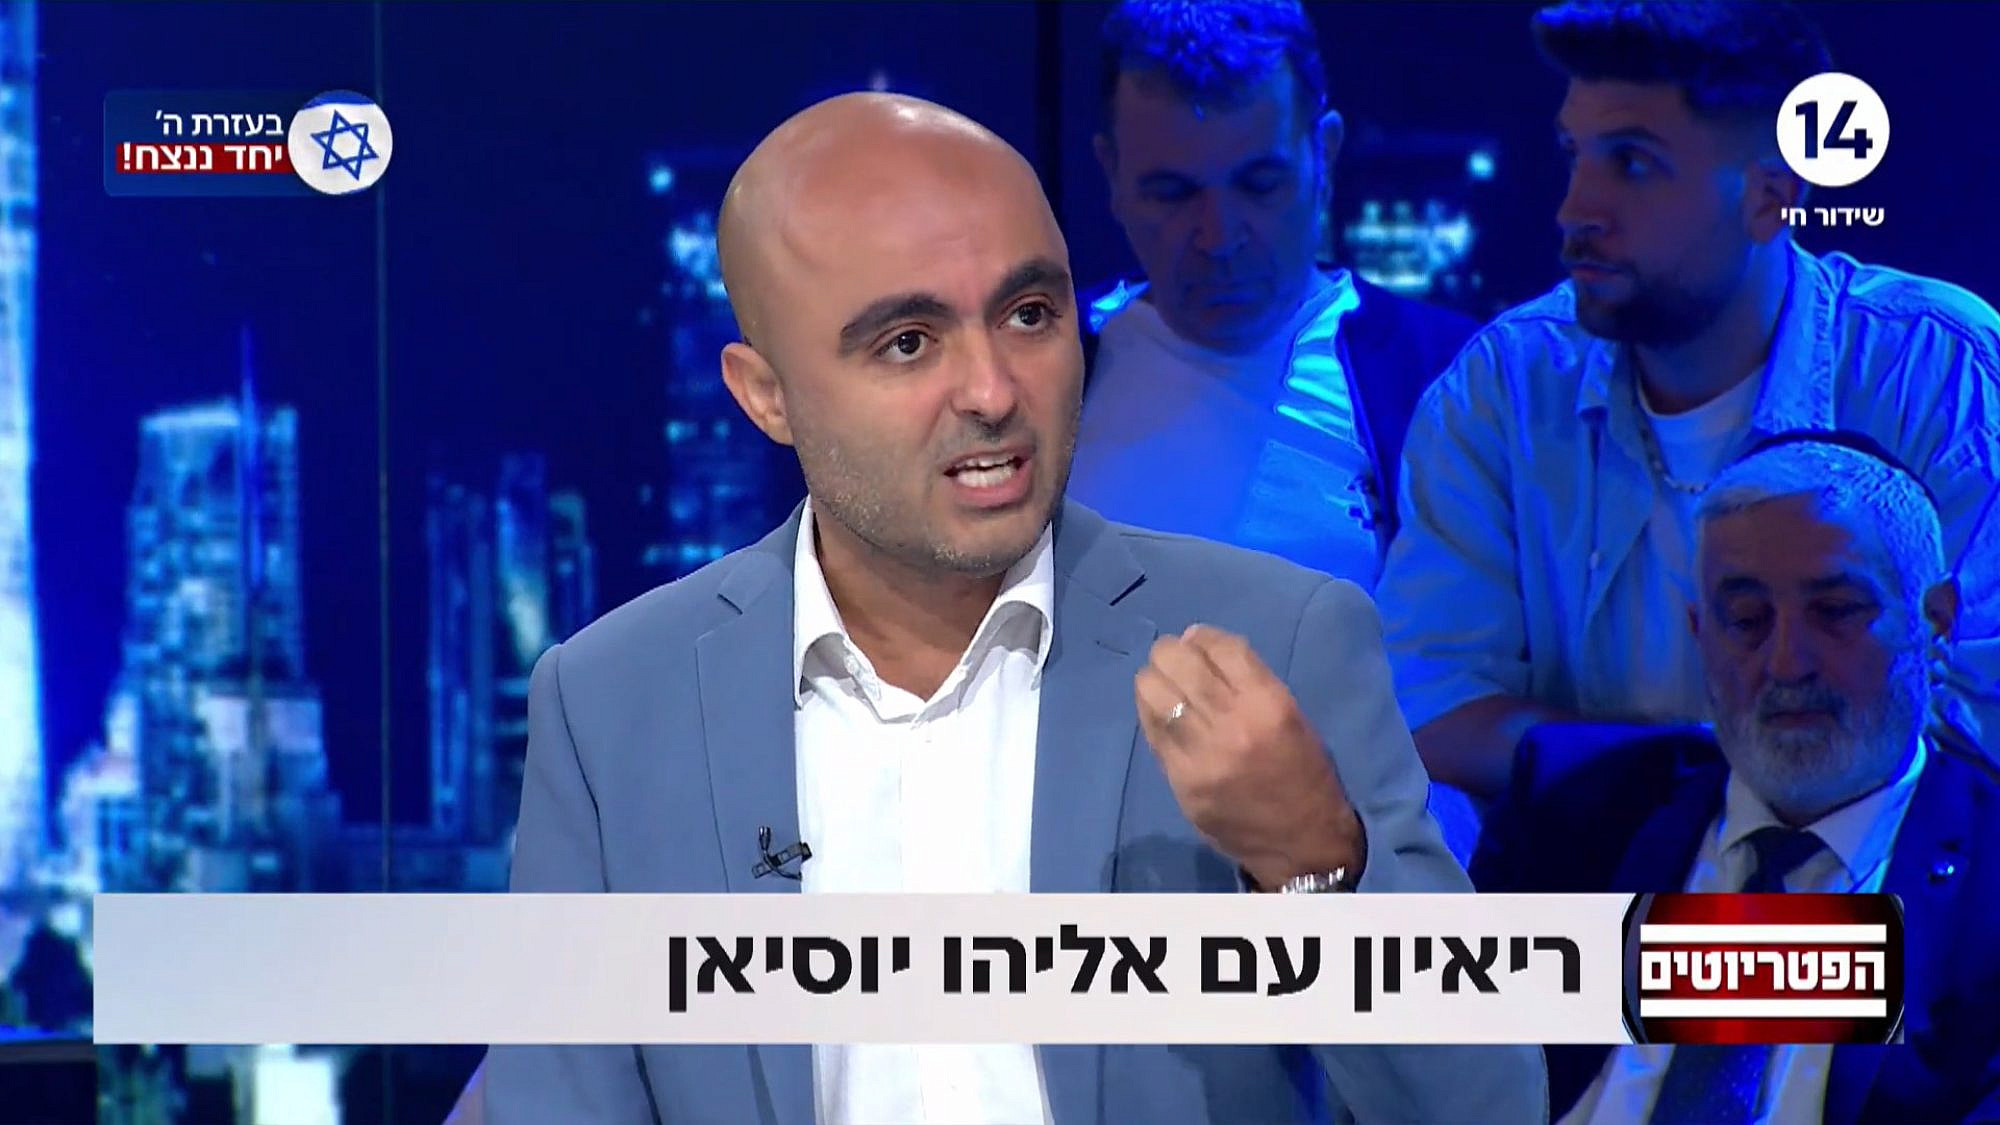 הסתה אנטי ישראלית בזמן מלחמה. אליהו יוסיאן (צילום מסך: ערוץ 14)